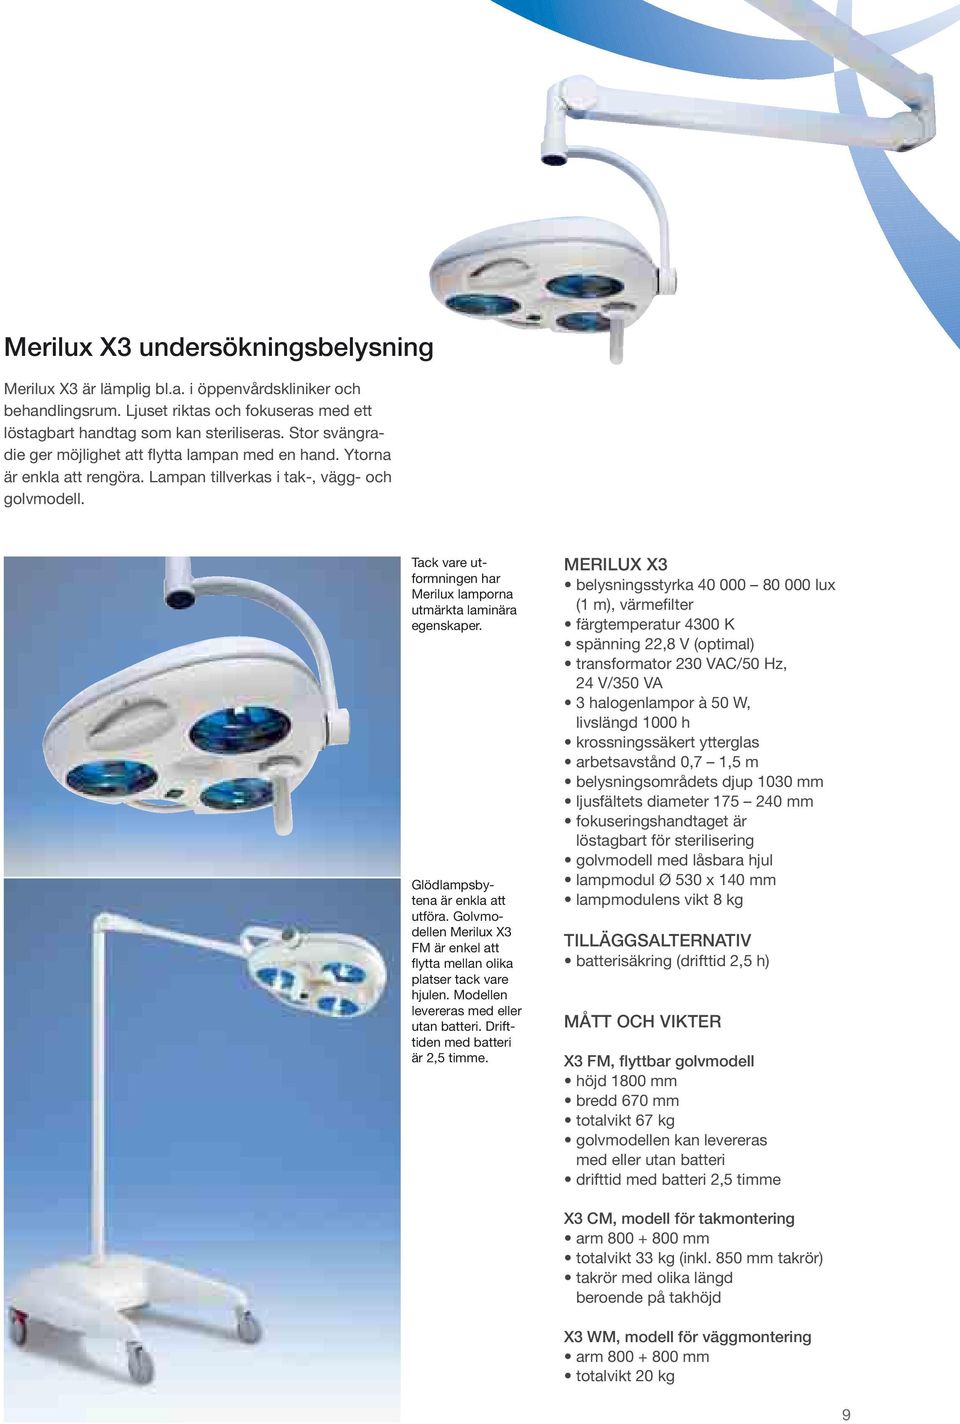 Tack vare utformningen har Merilux lamporna utmärkta laminära egenskaper. Glödlampsbytena är enkla att utföra. Golvmodellen Merilux X3 FM är enkel att flytta mellan olika platser tack vare hjulen.